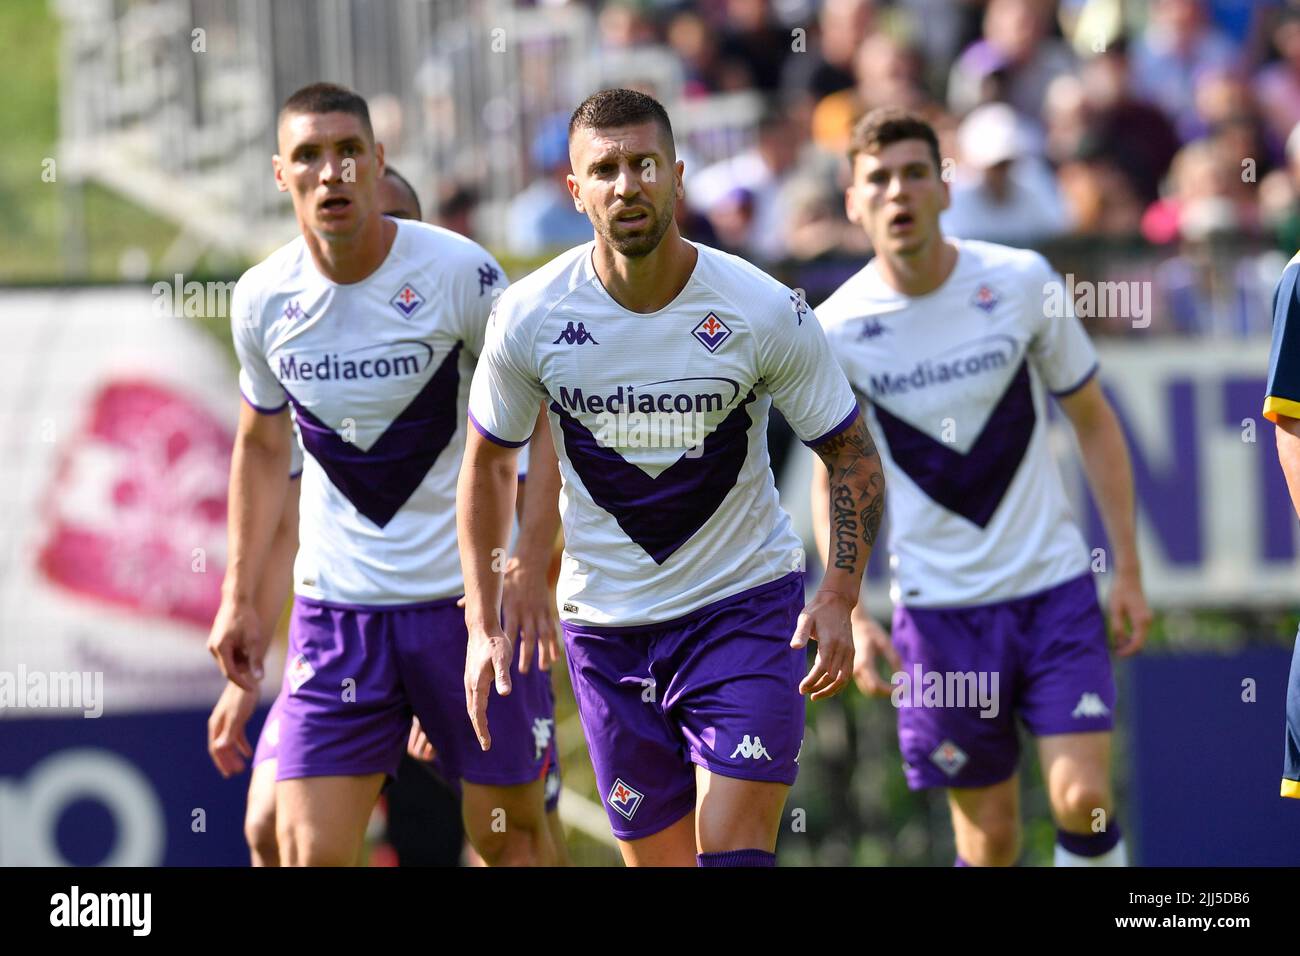 Terzic's Signed Match Shirt, Fiorentina-Bologna 2022 + Shin Guards